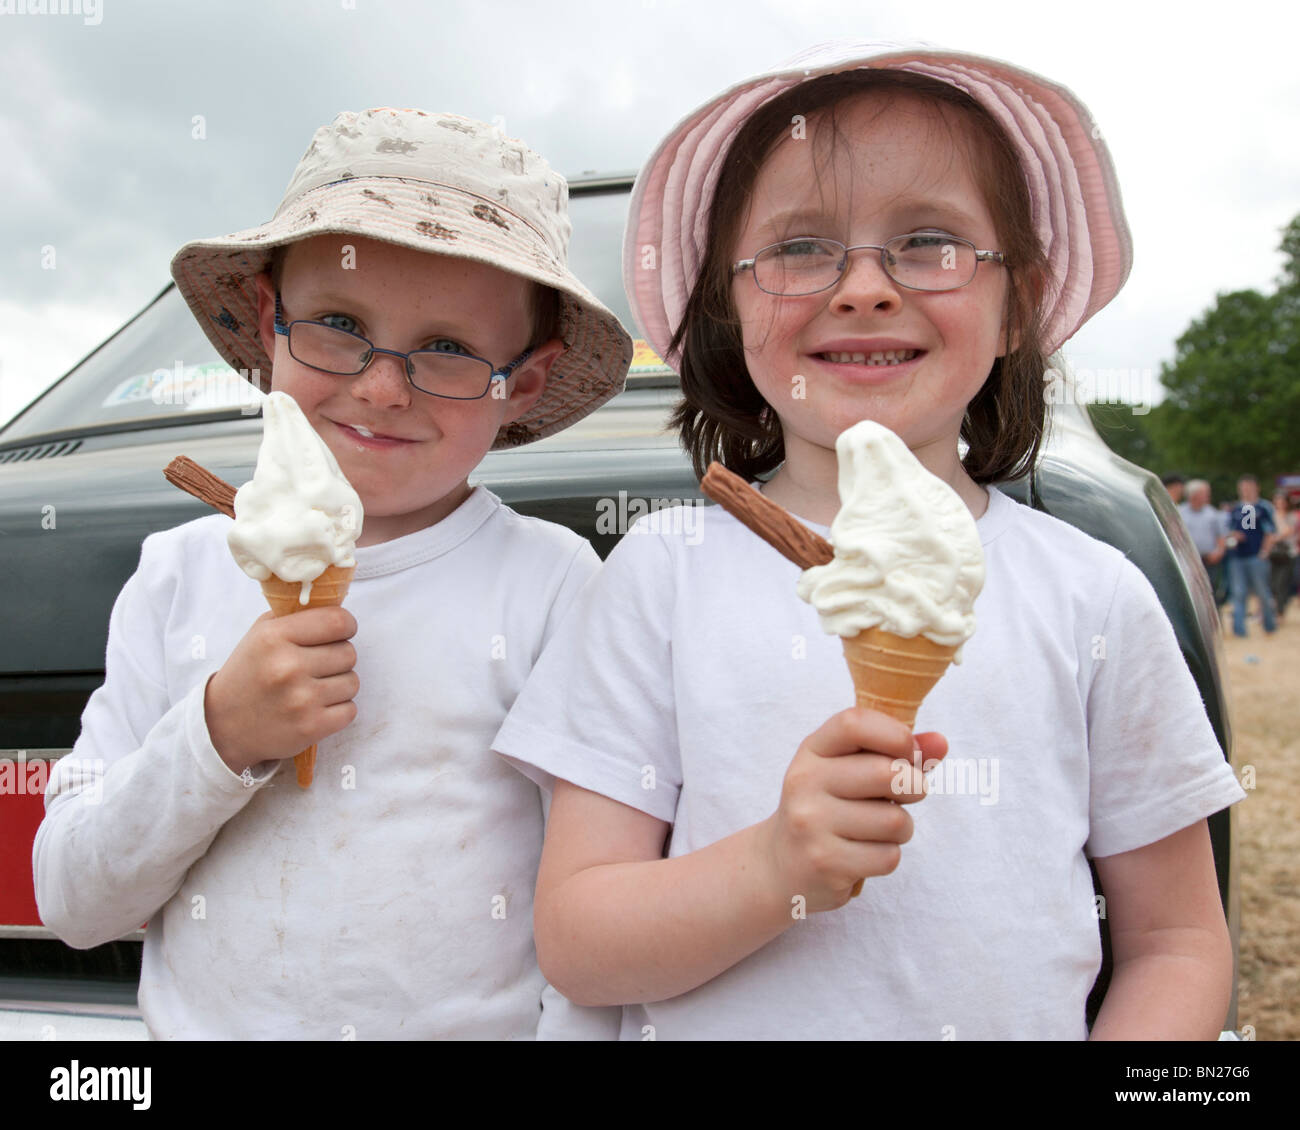 Two children eating ice cream cones, Ireland Stock Photo